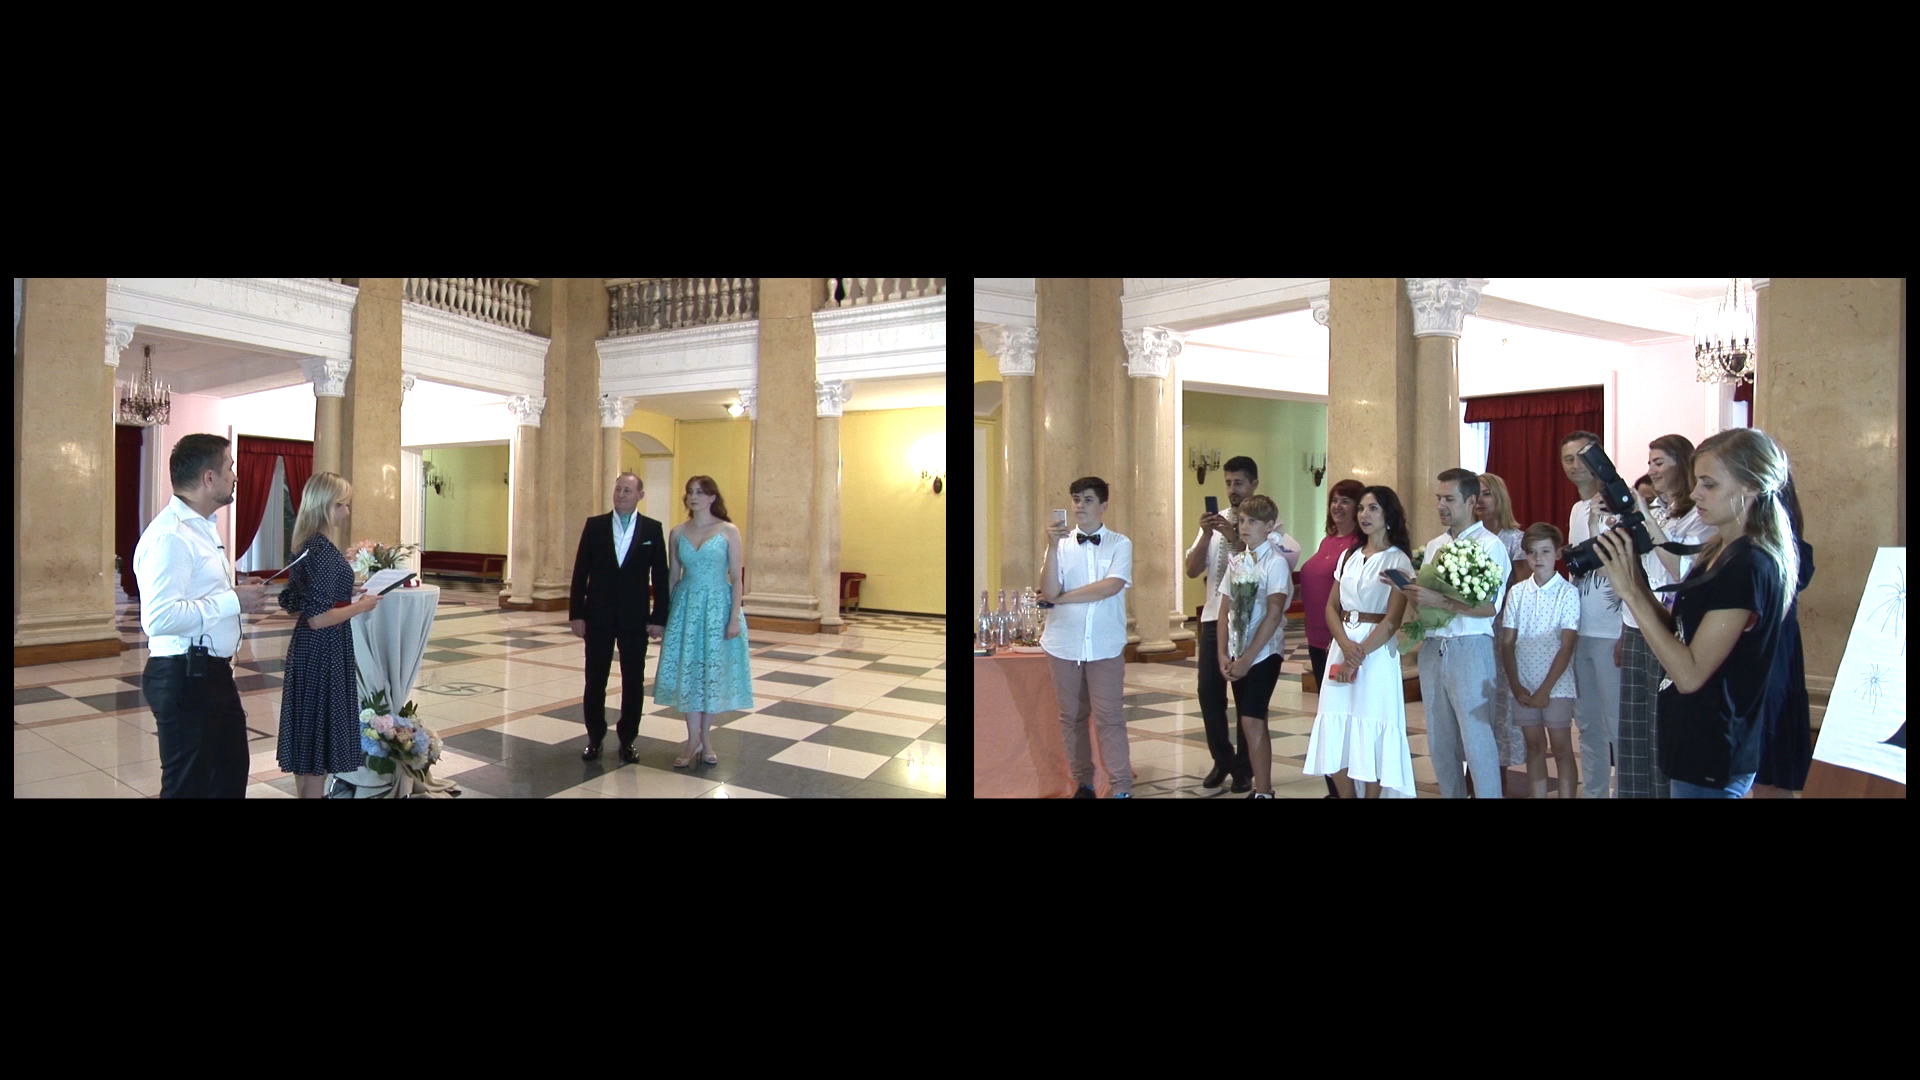 Онлайн трансляция свадебной церемонии двухкамерный режим. Молодожены в окне слева и гости церемонии справа.